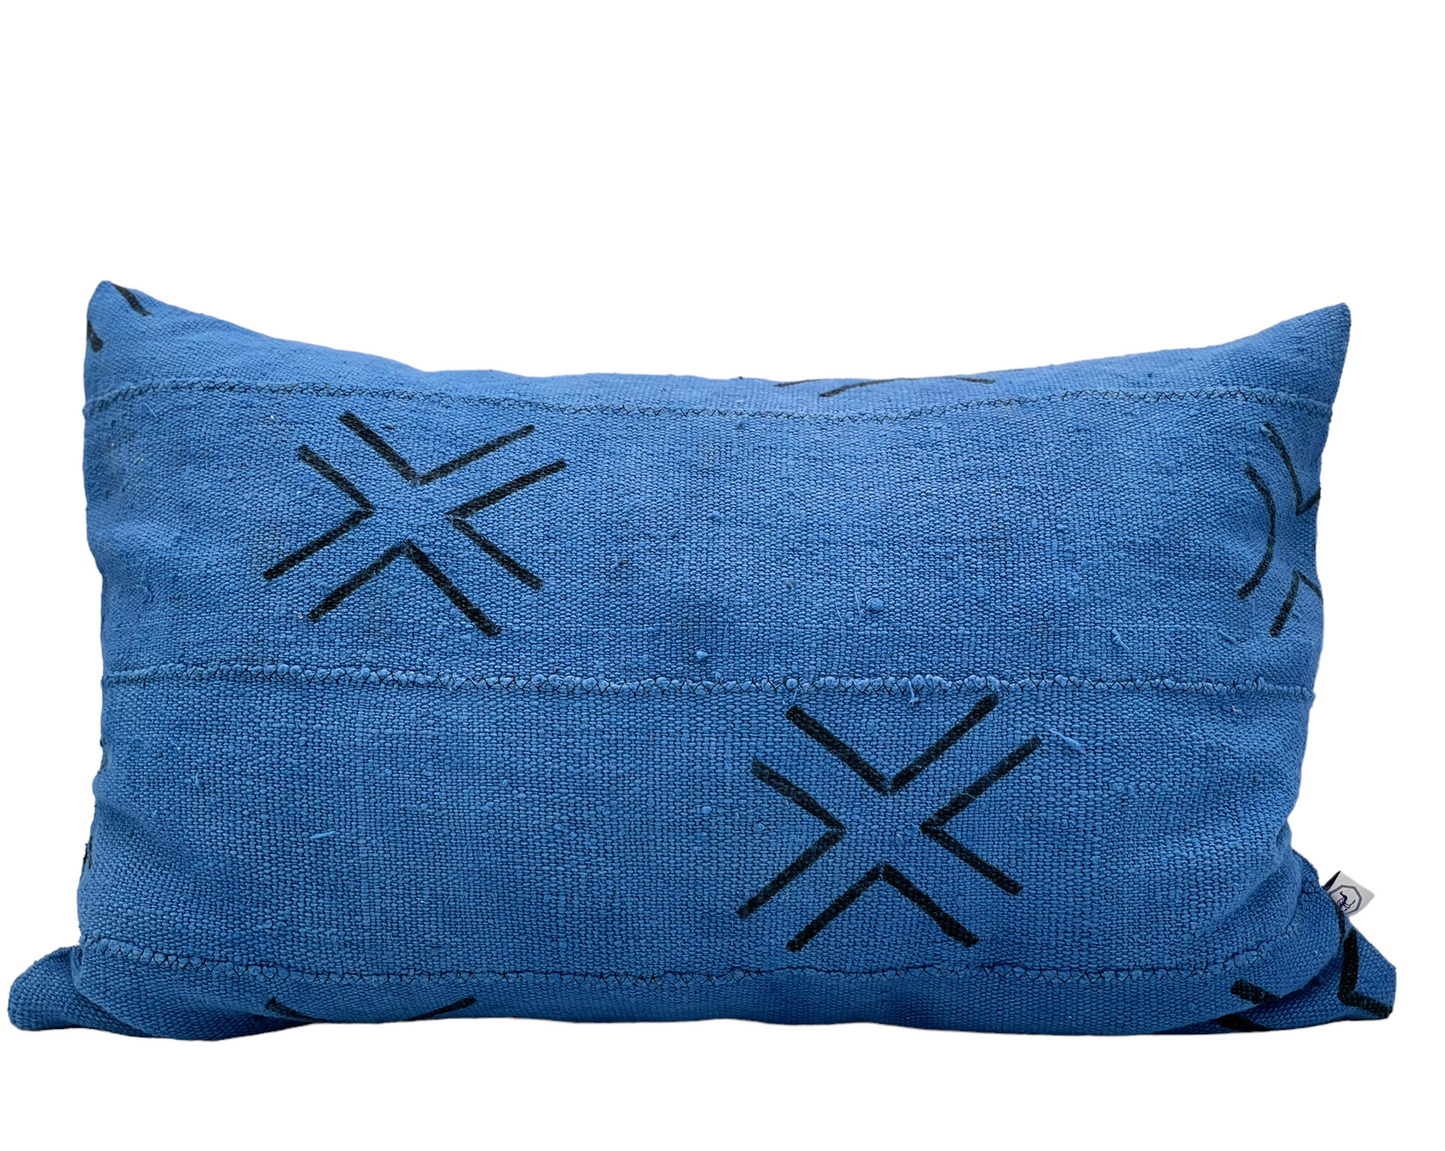 Housse de coussin faite main en bogolan bleu cobalt Mali. 40x60 cm. Pur coton bio. Housse de coussin zippée. Intérieur de coussin vendu séparément